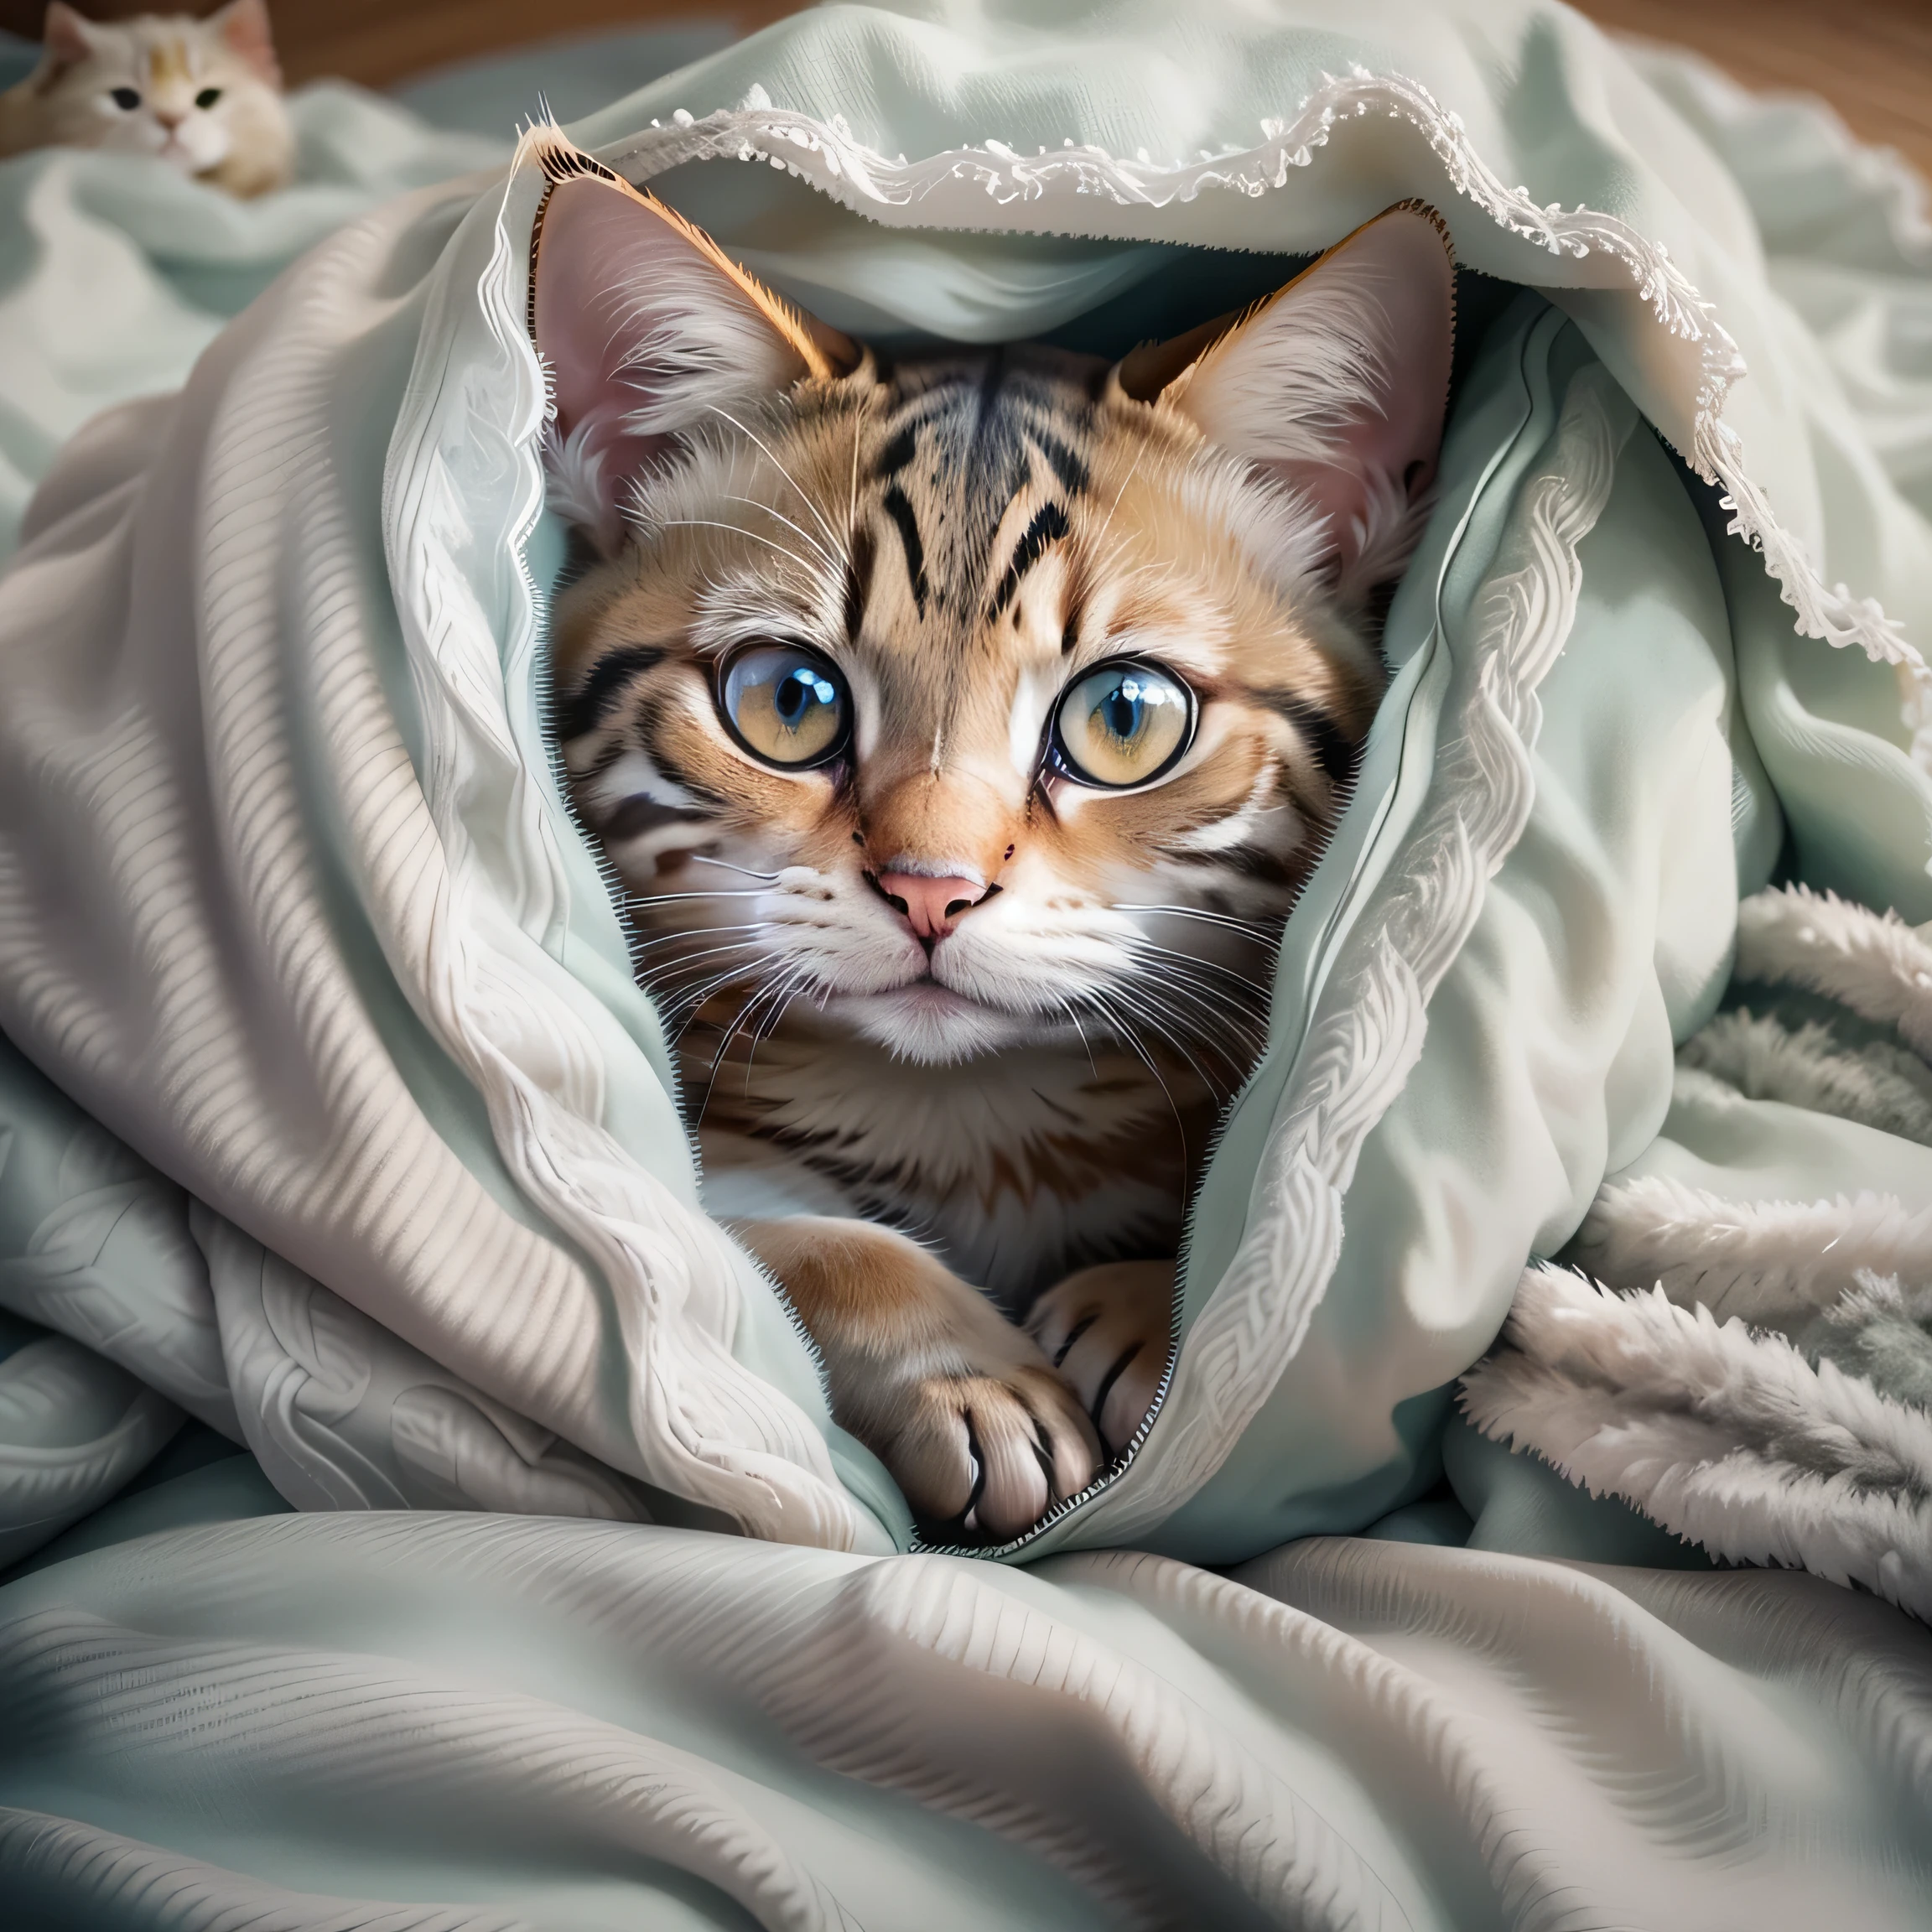 there is a cat that is การปกปิด under a blanket, ขดตัวอยู่ใต้ฝาครอบ, การปกปิด, จ้องมองที่คุณ, สบายใต้ผ้าห่ม, ภาพแมว, คลุมด้วยผ้าห่ม, Cute ภาพแมว, การแสดงออกที่หวาดกลัว, แมวป่วยนอนอยู่ในห้องนอน, มองเข้าไปในกล้อง, ด้วยดวงตาที่น่ารัก, พบ, ตาคม, แมวน่ารัก